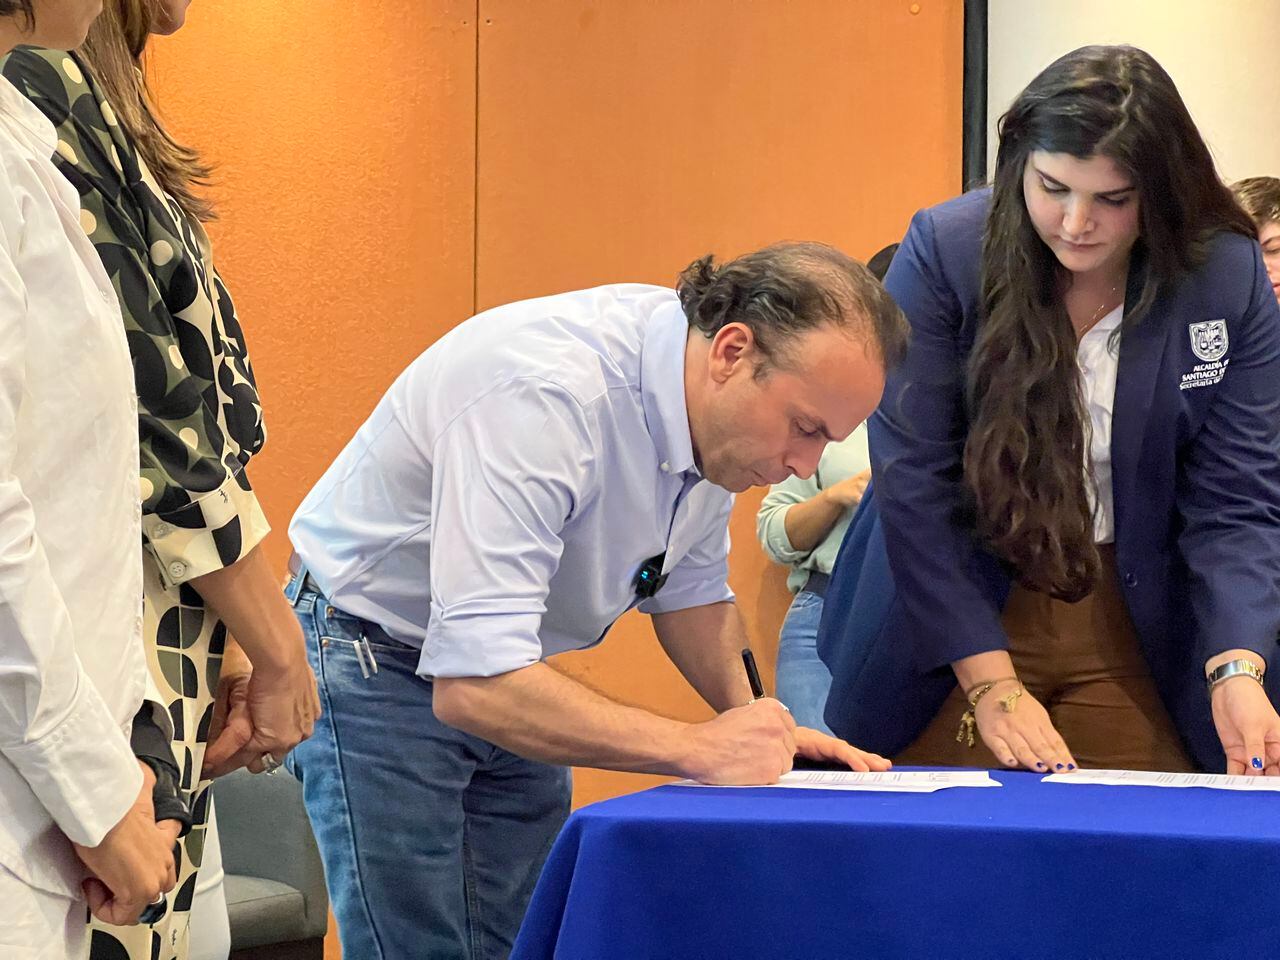 El alcalde Alejandro Eder firmó convenio interinstitucional para promover el turismo médico en Cali y el Valle.

Foto: Cortesía Cámara de Comercio de Cali para El País